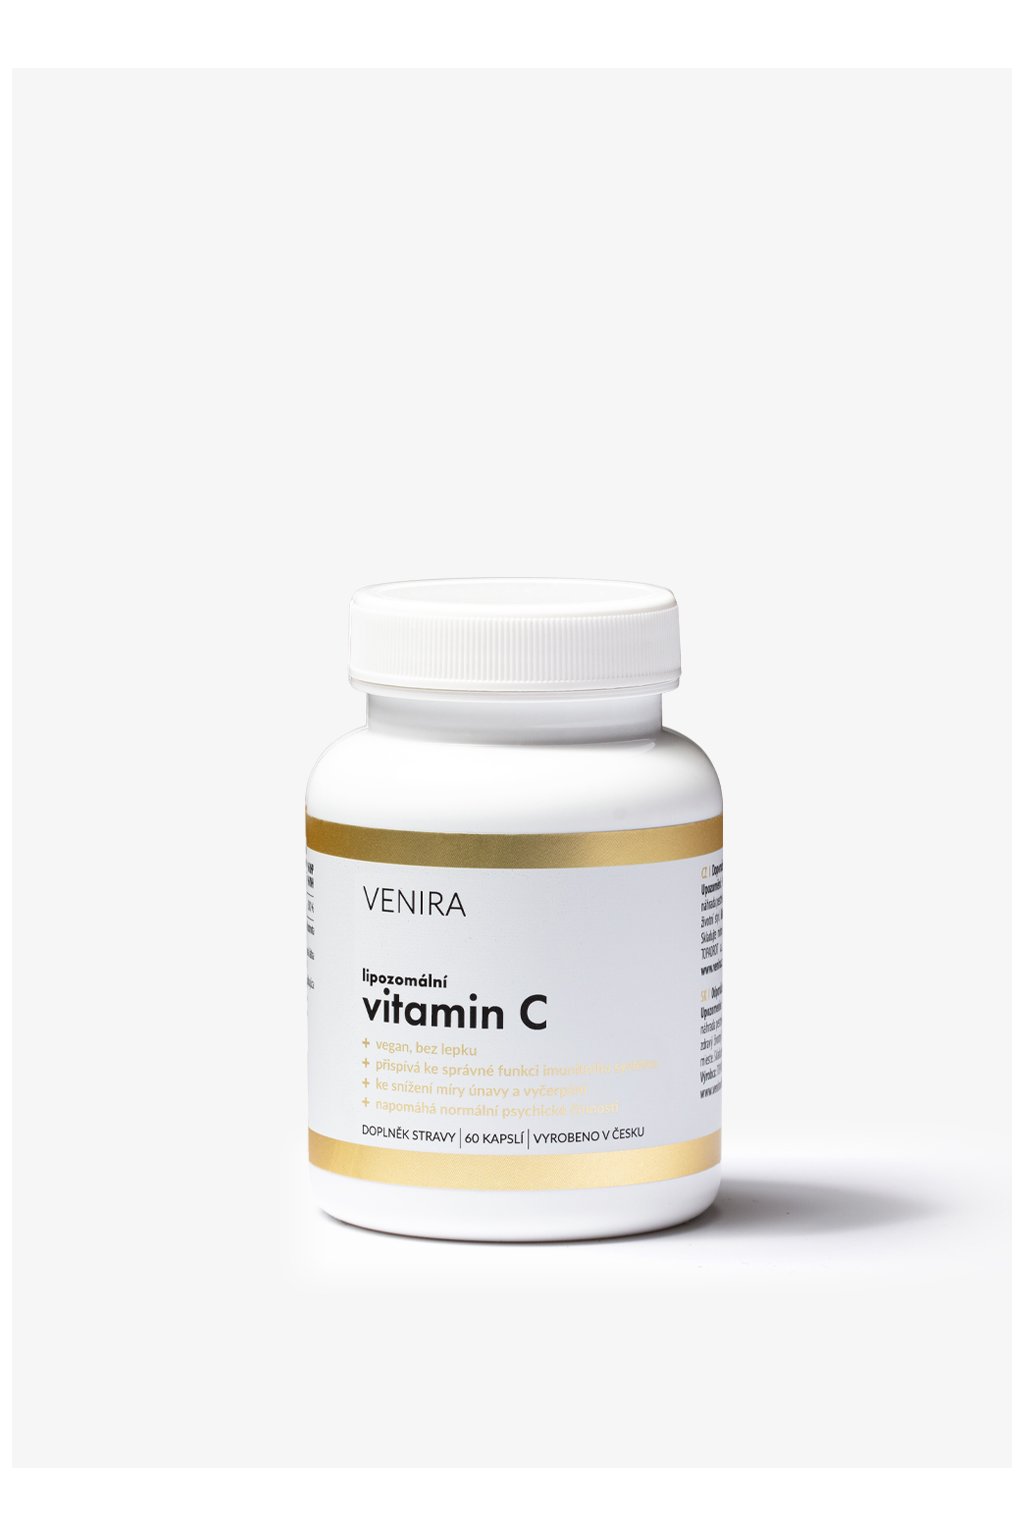 VENIRA lipozomální vitamin C